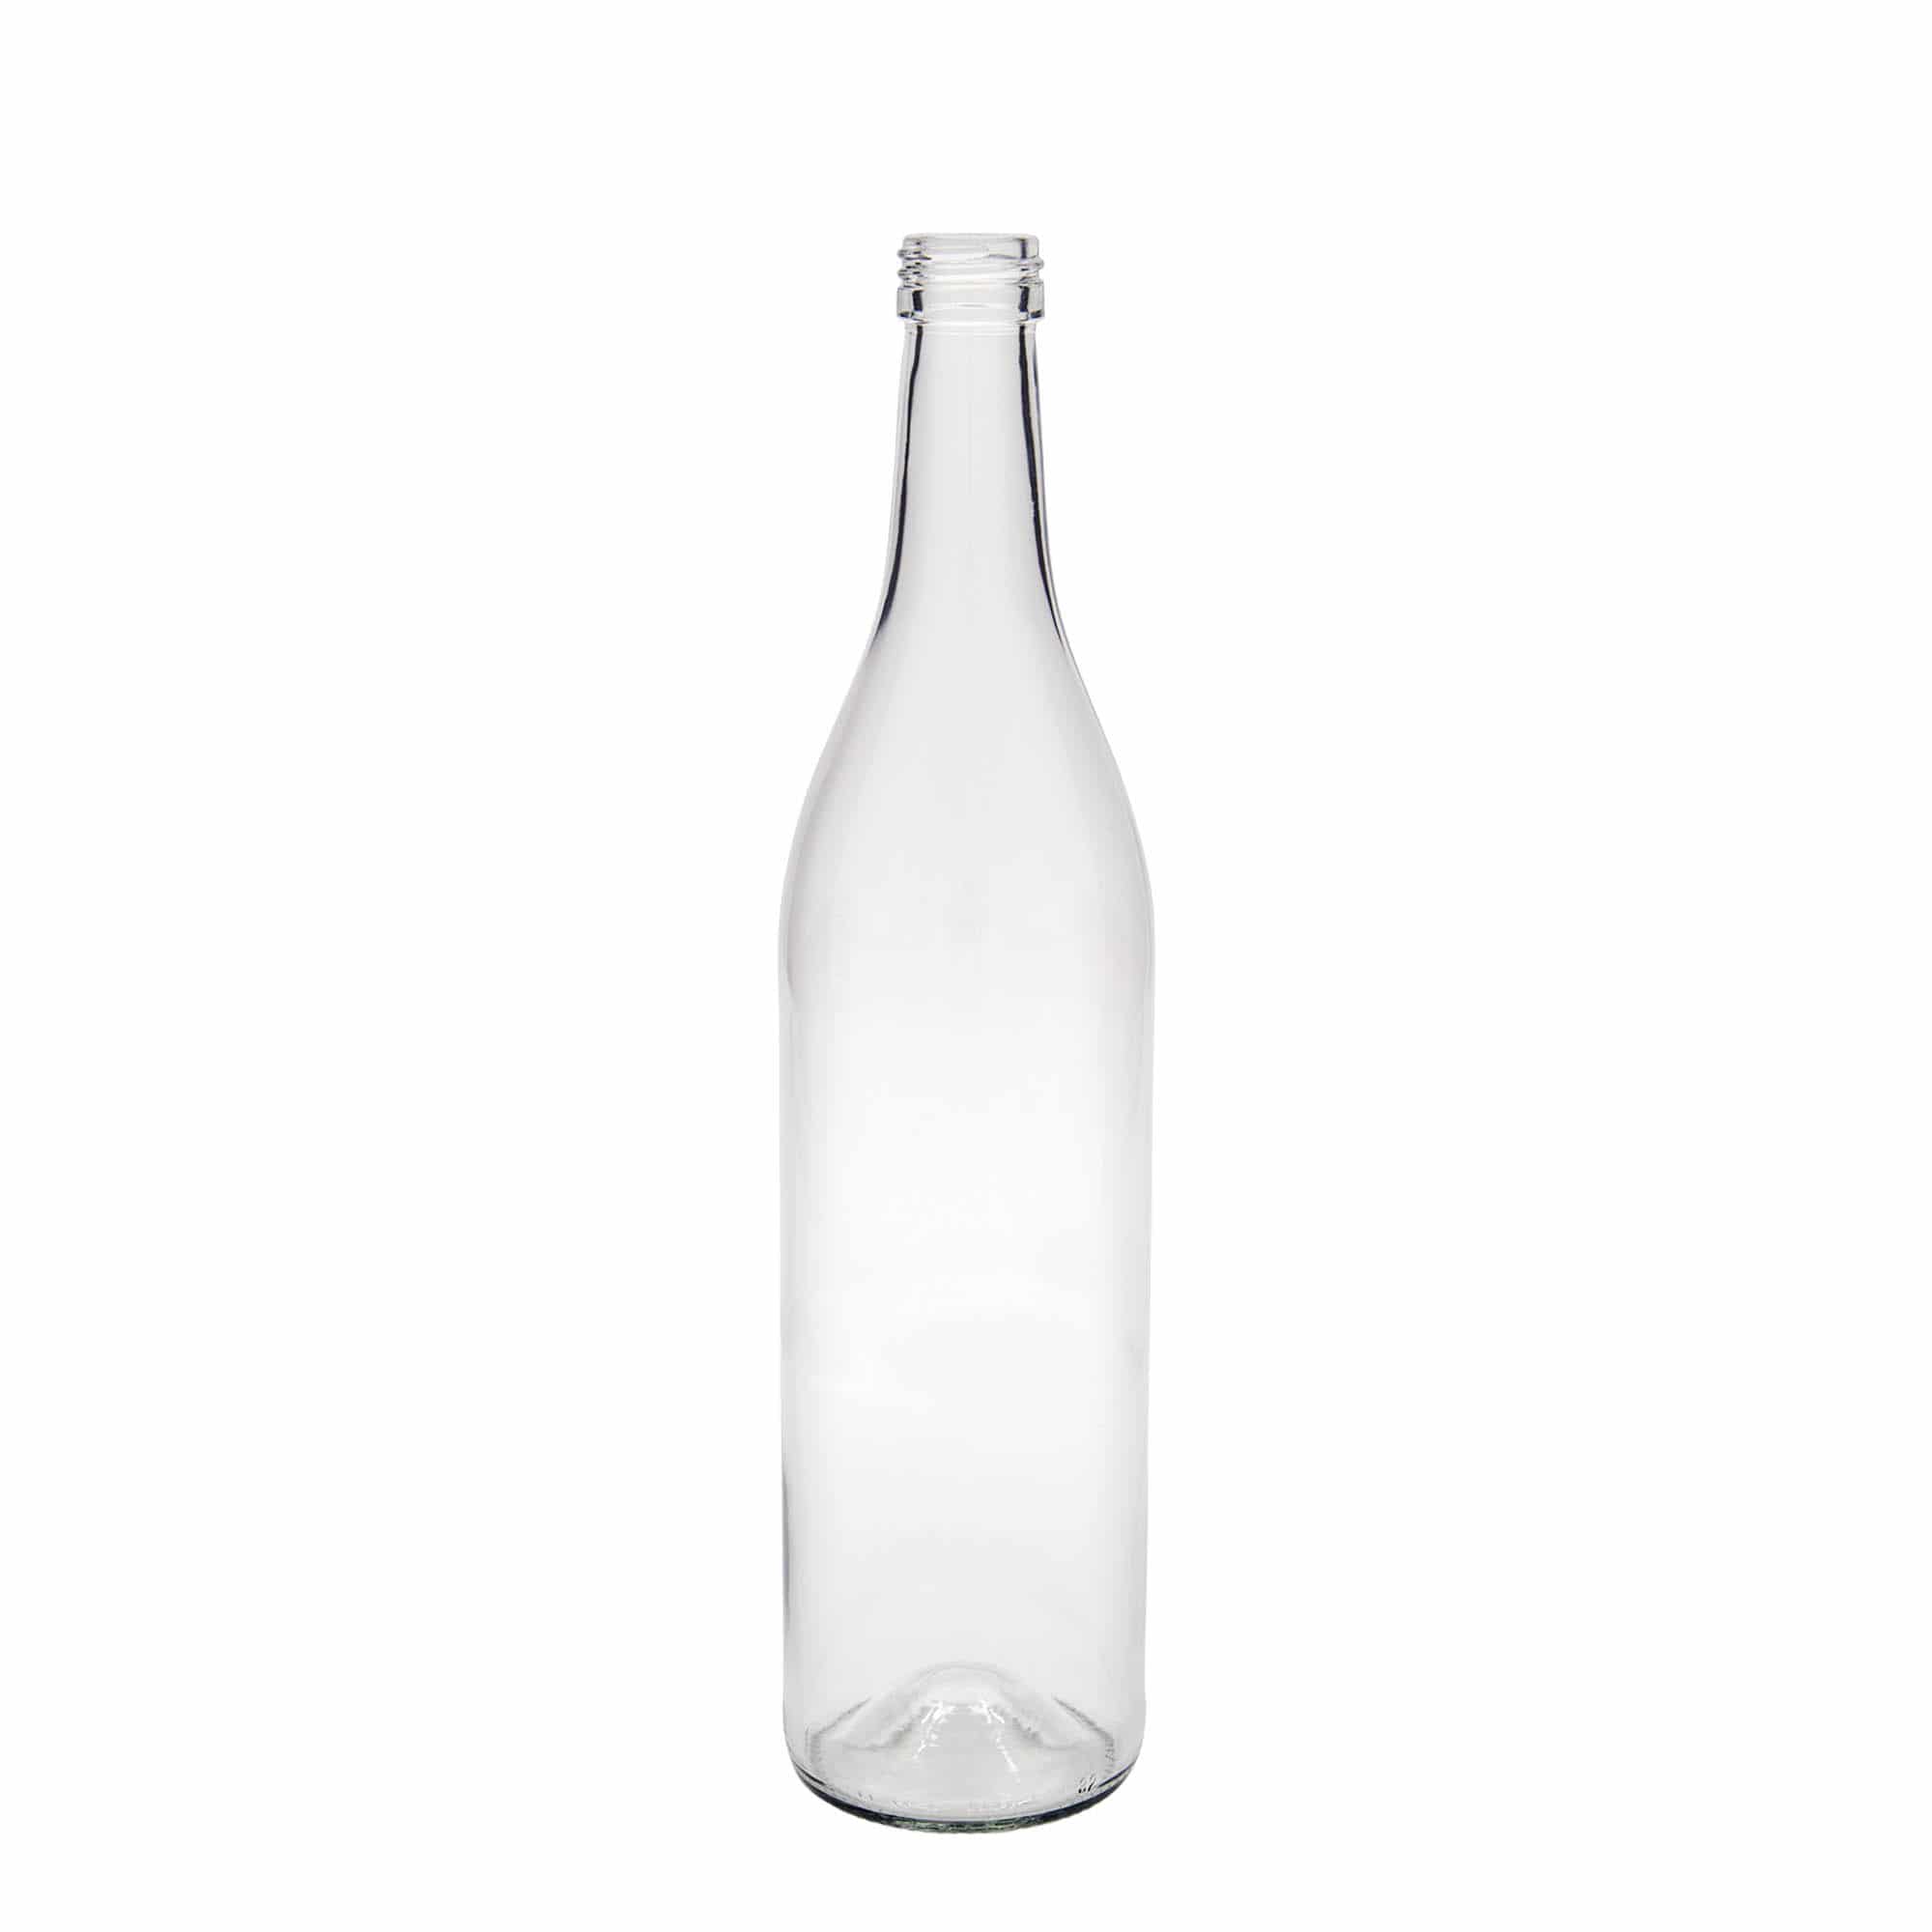 700 ml glass bottle 'Roger', closure: PP 28